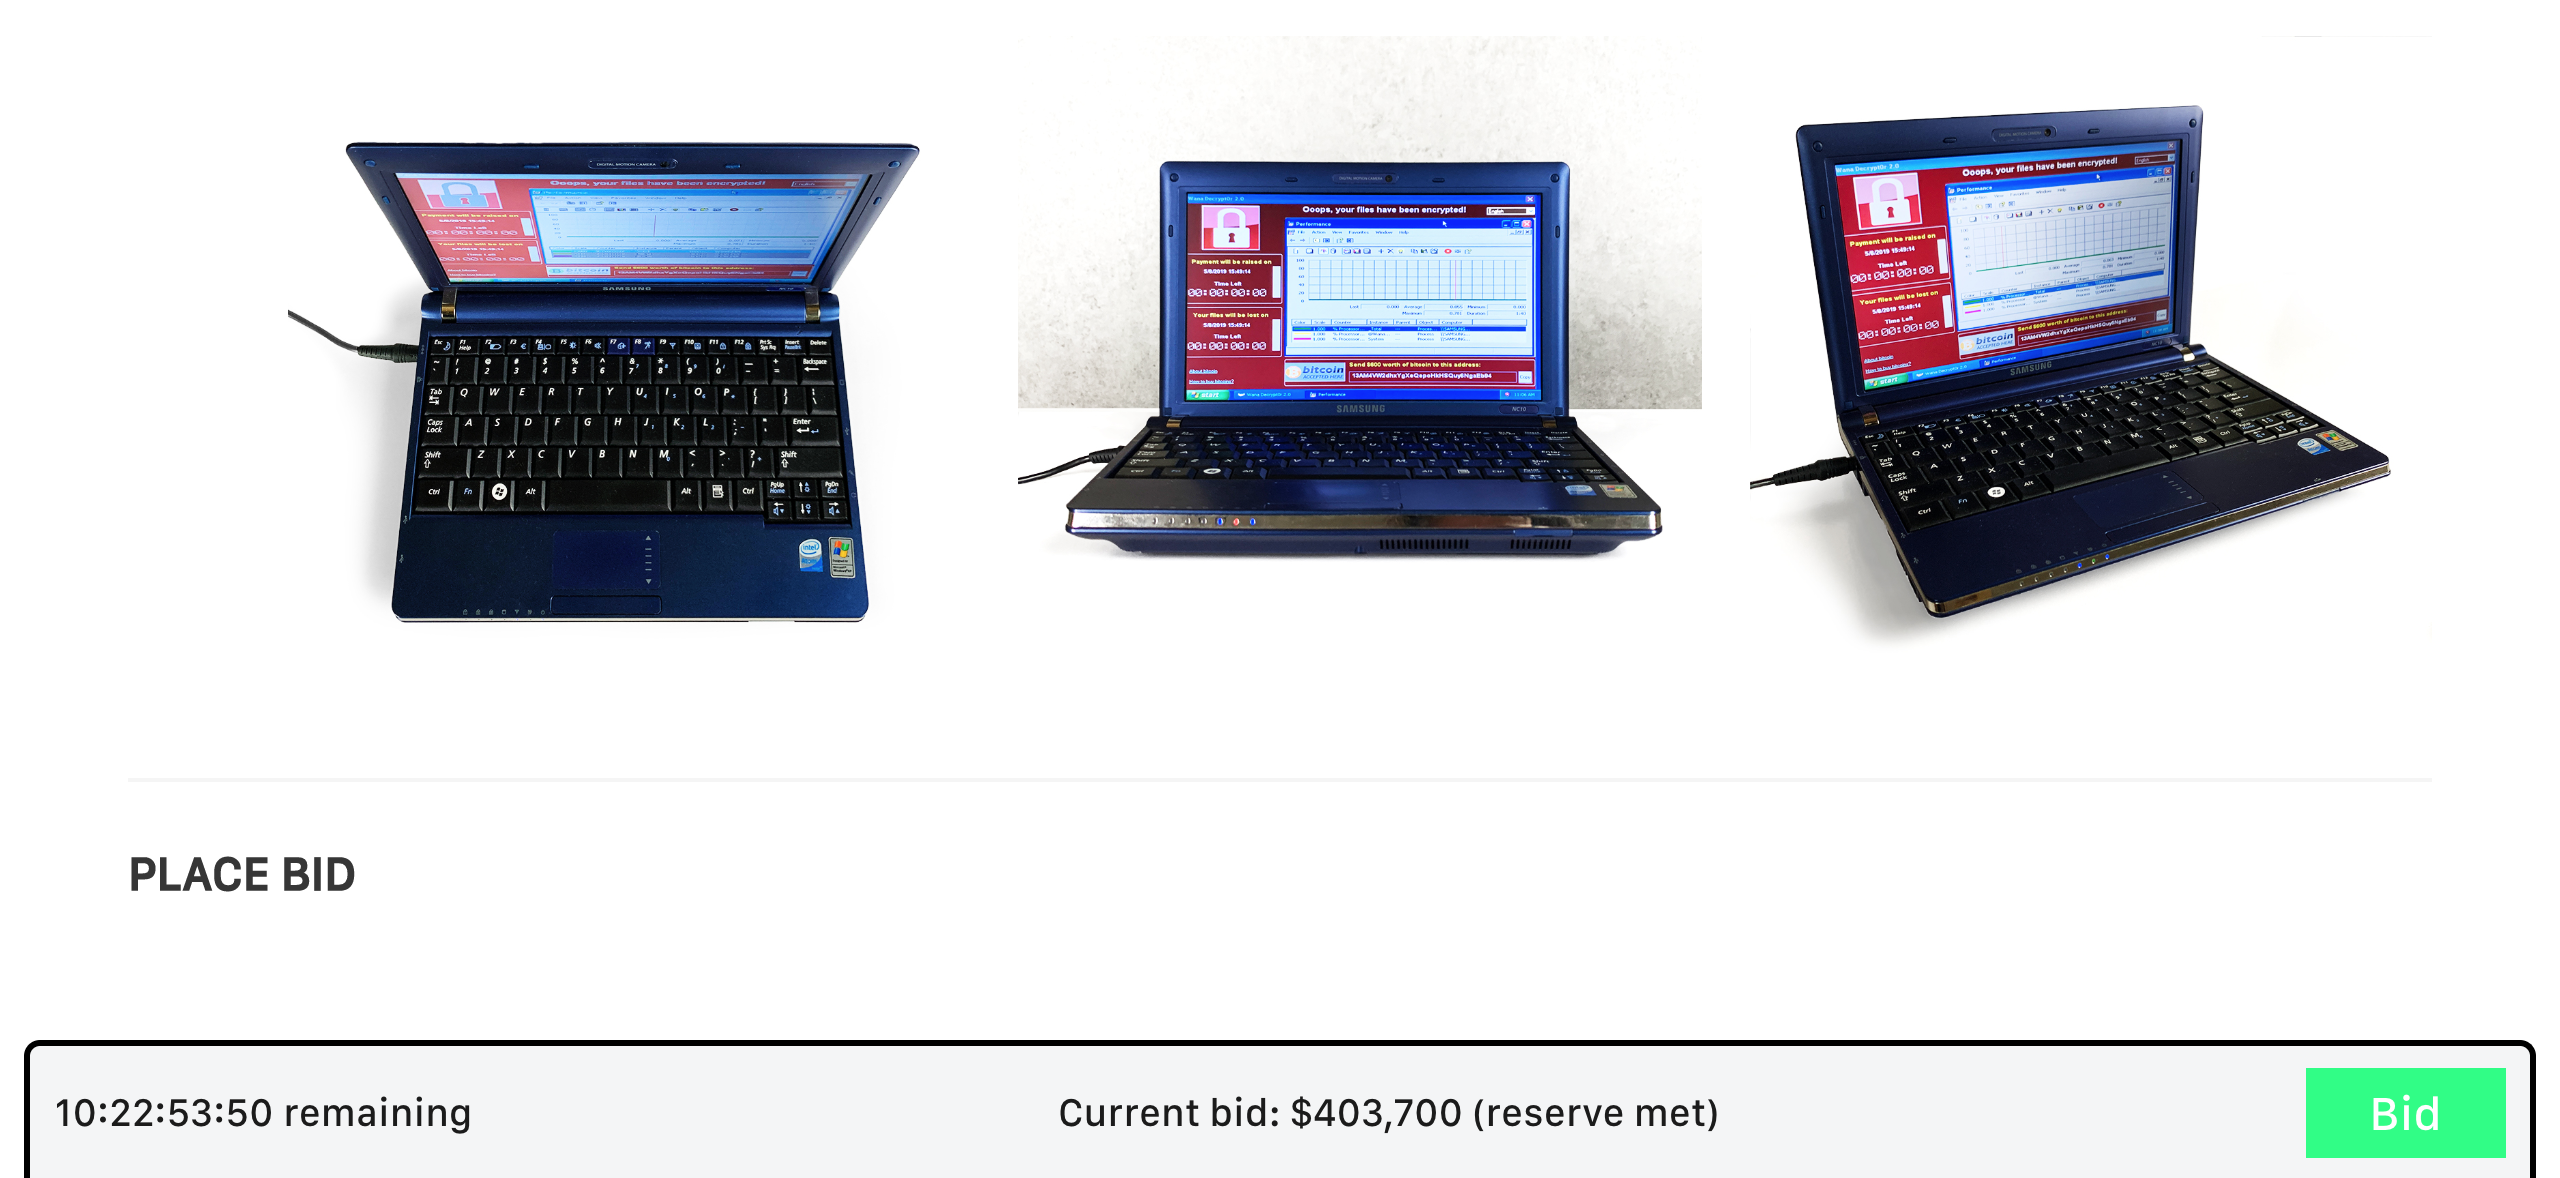 Chiếc laptop chứa những malware nguy hiểm nhất thế giới đang được bán đấu giá, hiện đang 400 ngàn đô